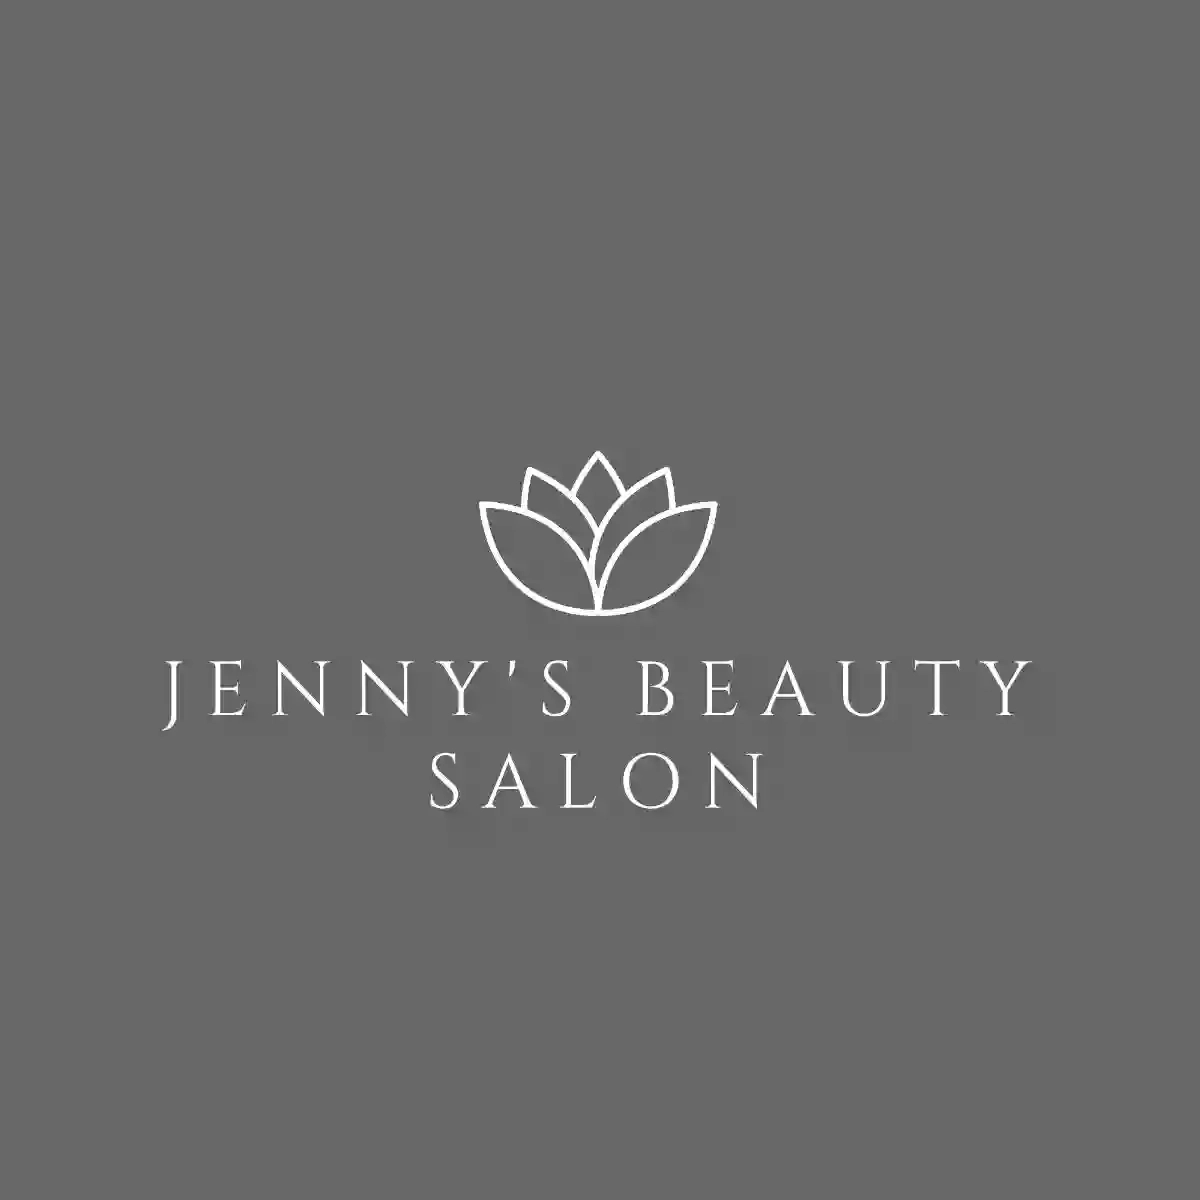 Jenny's Beauty Salon